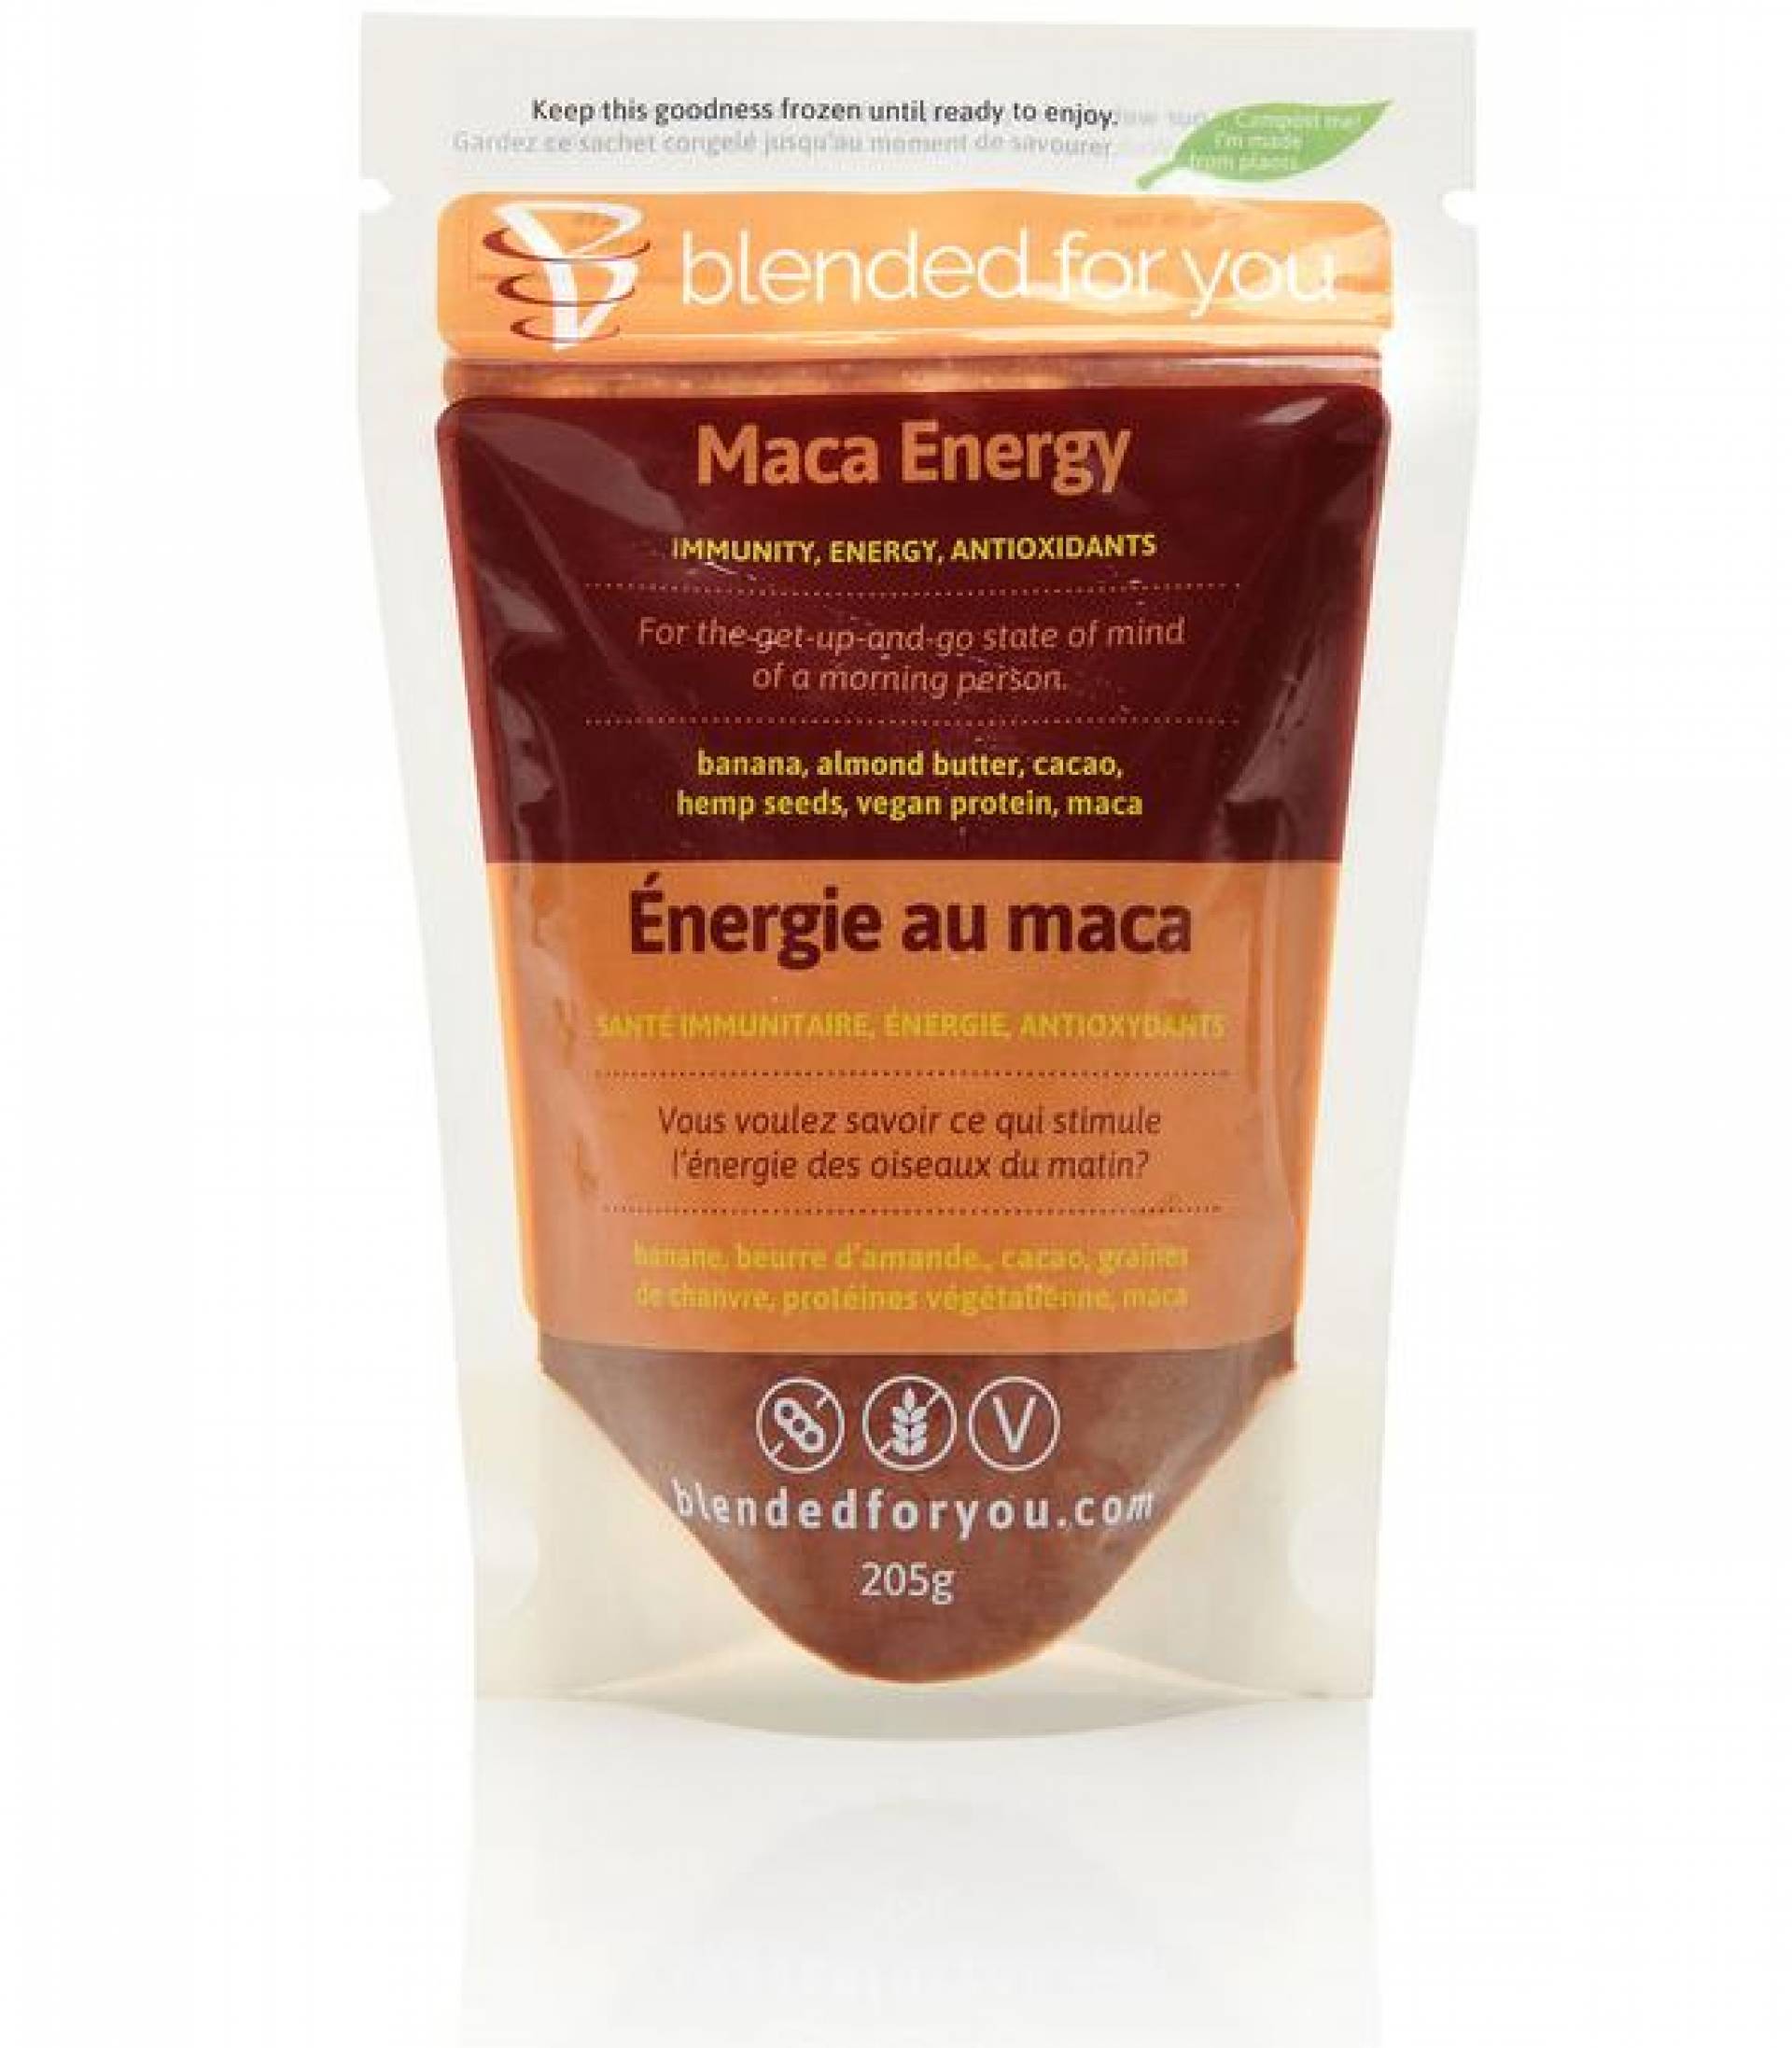 The Maca Energy Smoothie